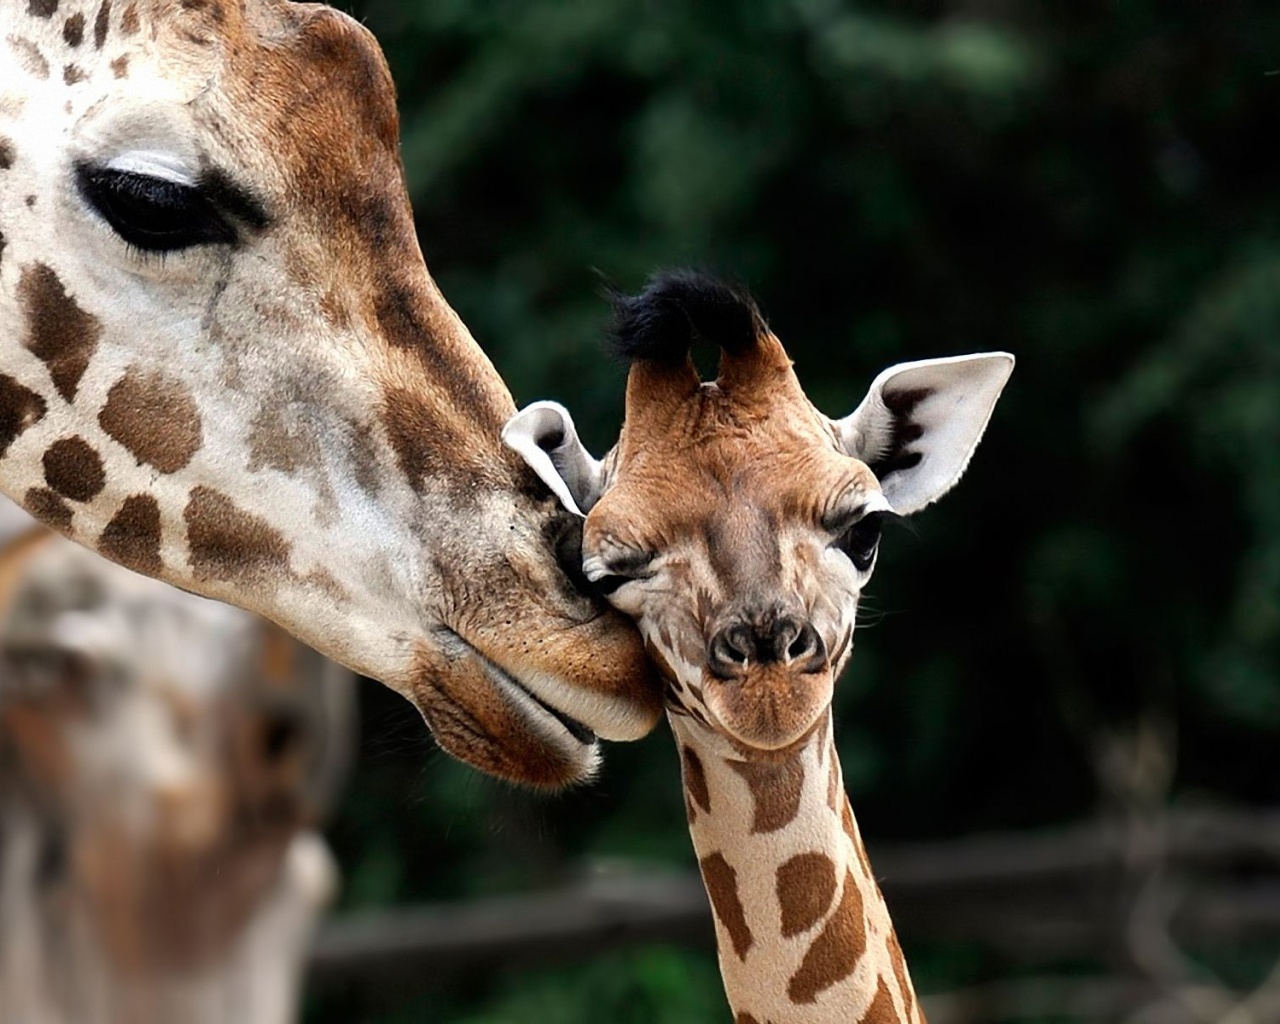 Giraffe Love